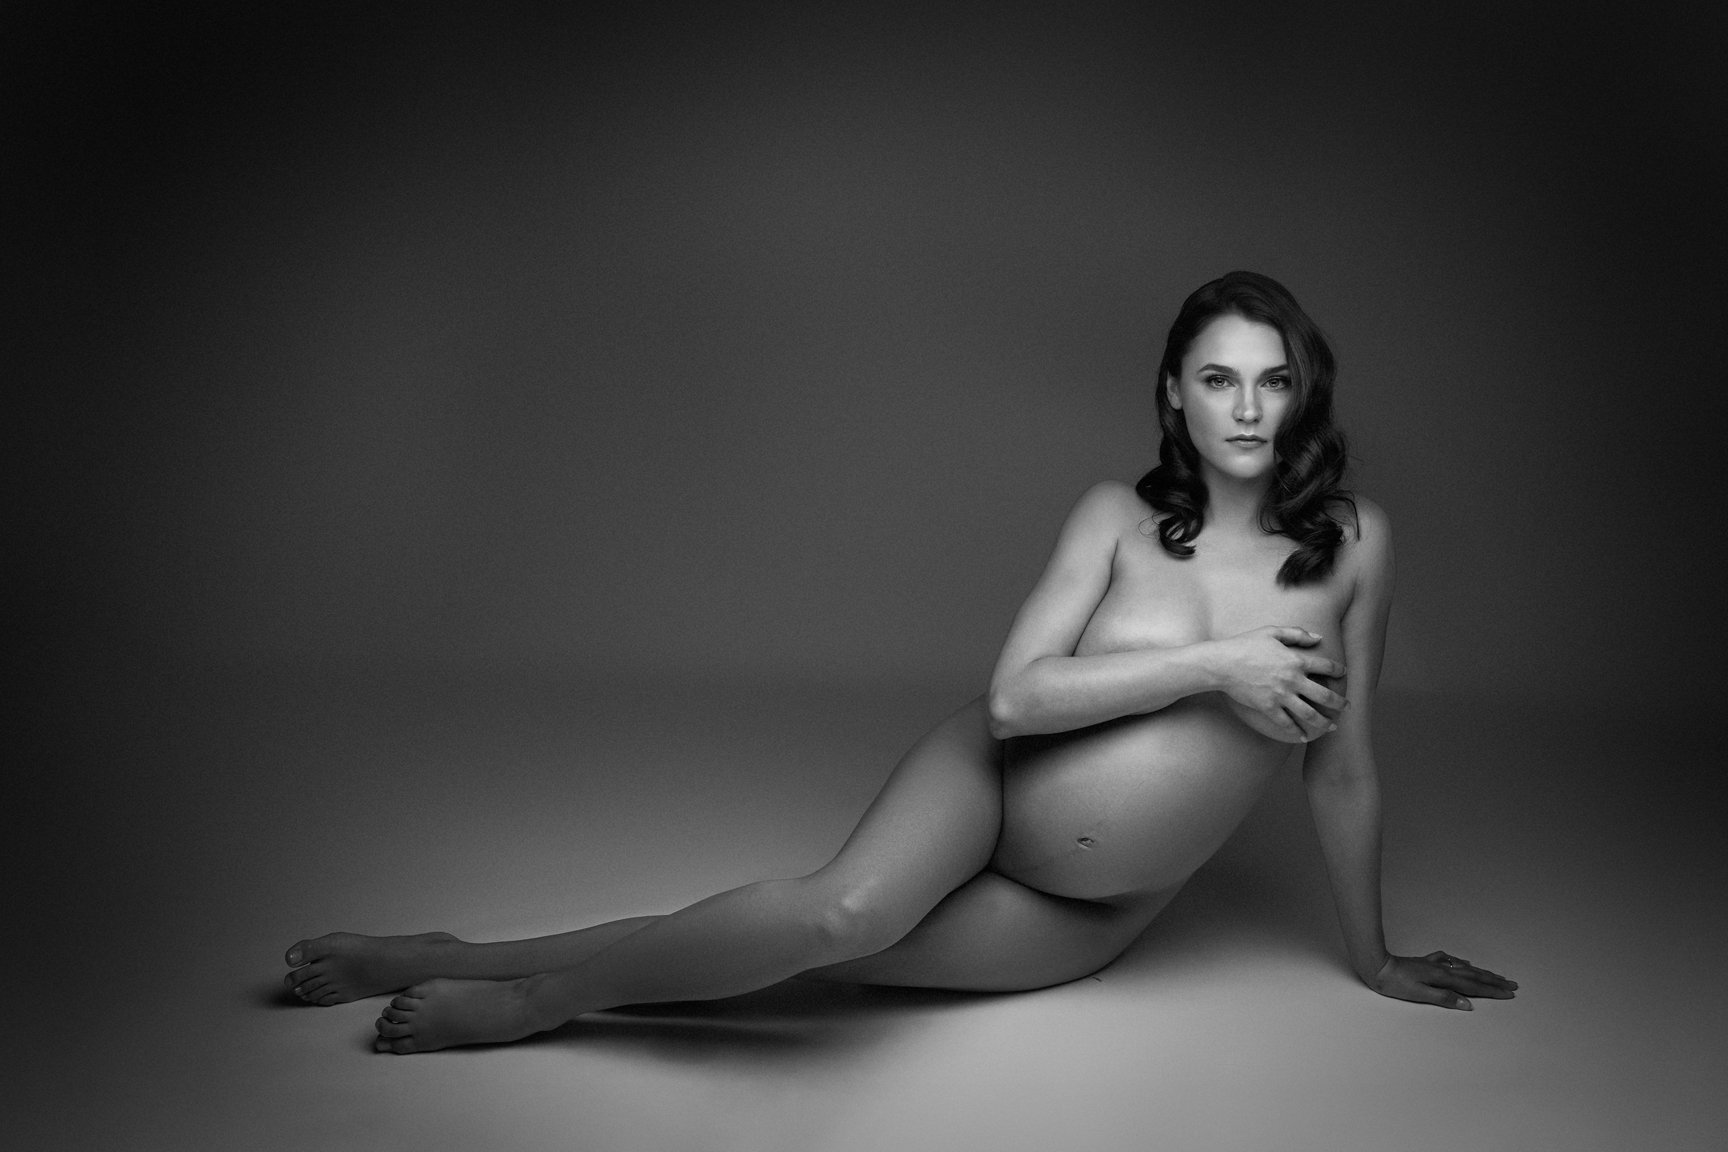 Séance photo de grossesse en studio dans le style nu maternité en Noir et Blanc par laury